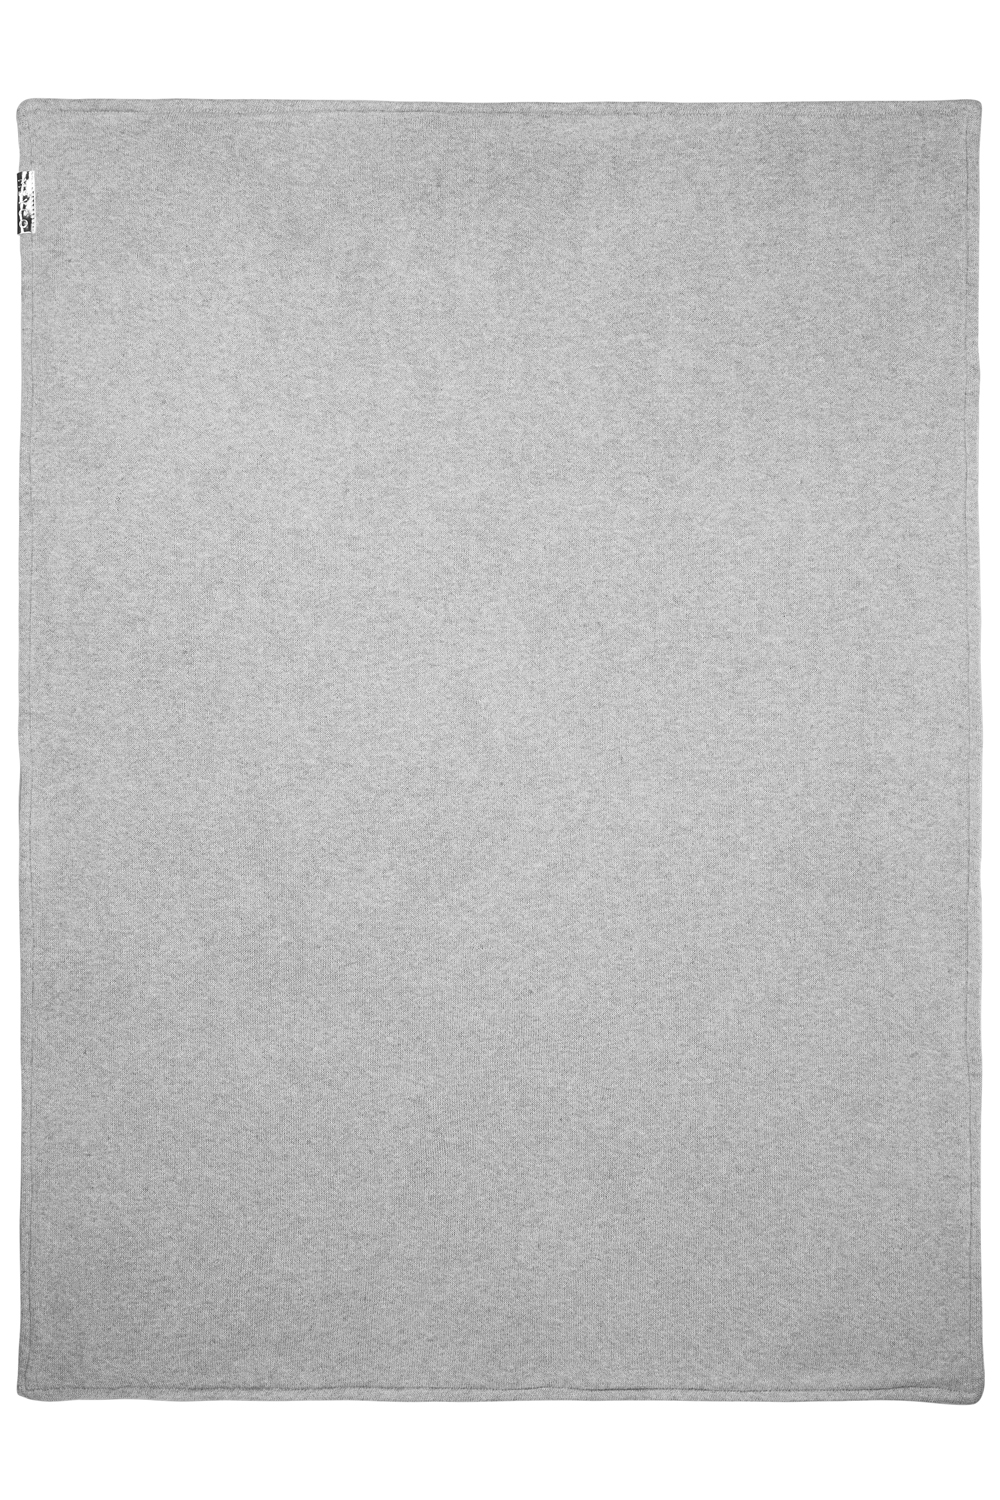 Wiegdeken Knit Basic velvet - grey melange - 75x100cm